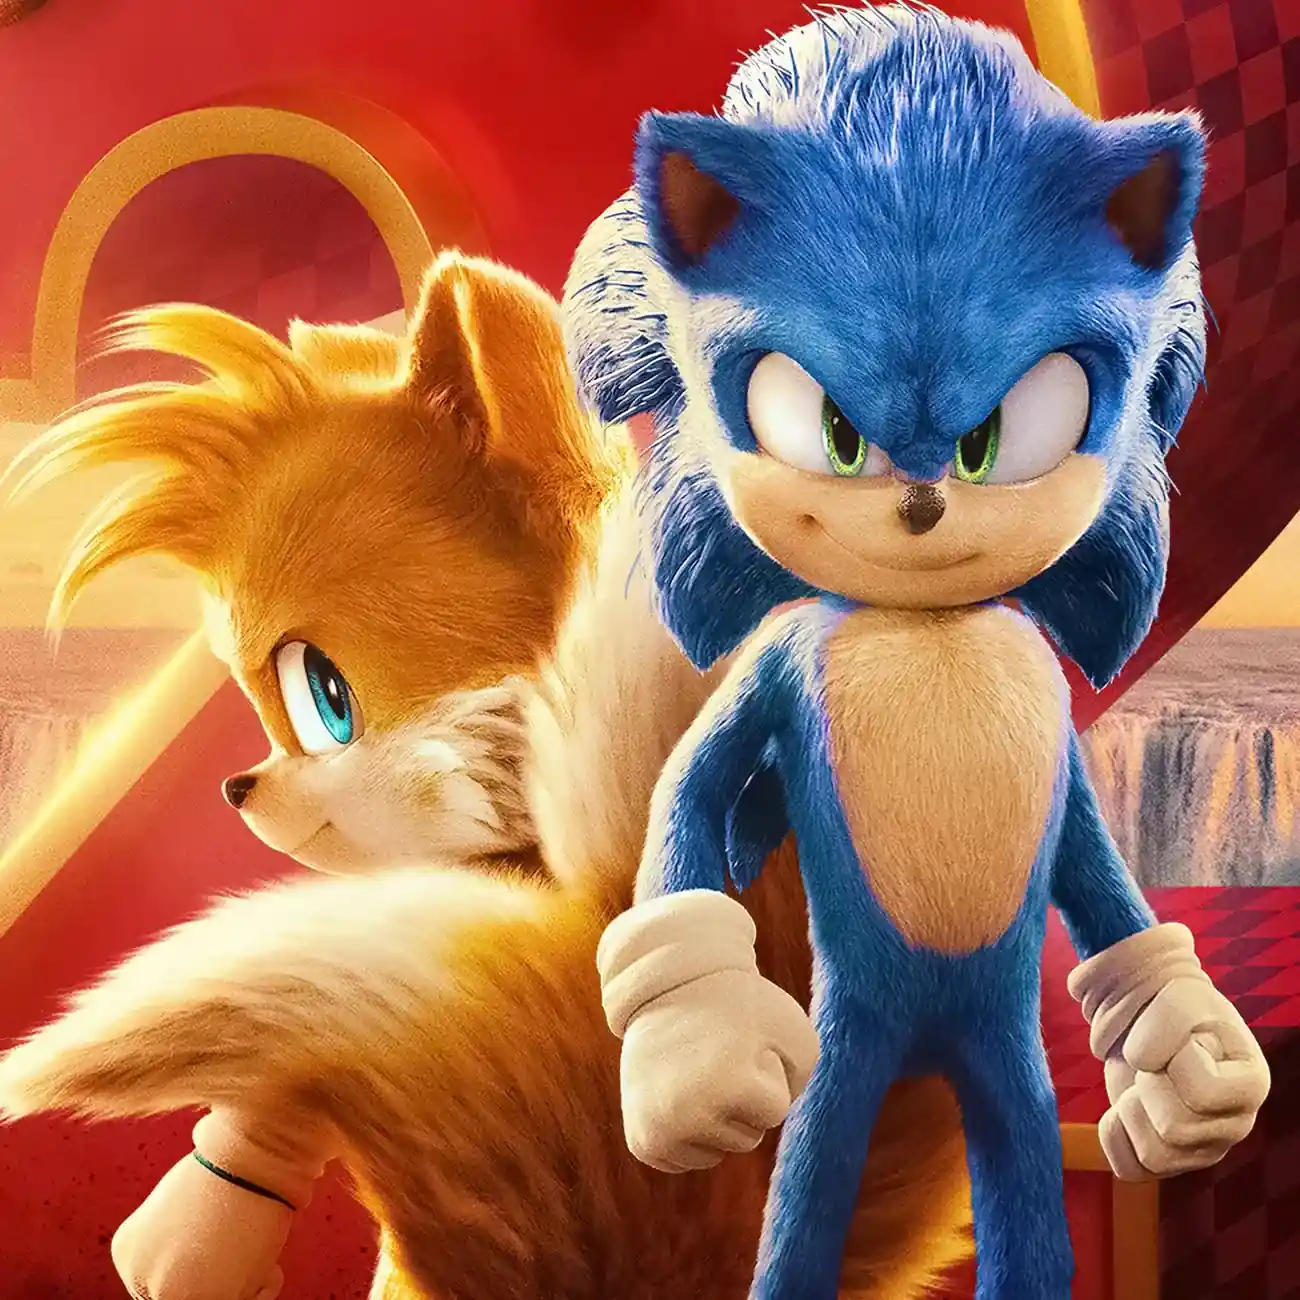 Sonic 3: Filme ganha primeira imagem oficial - O Herói